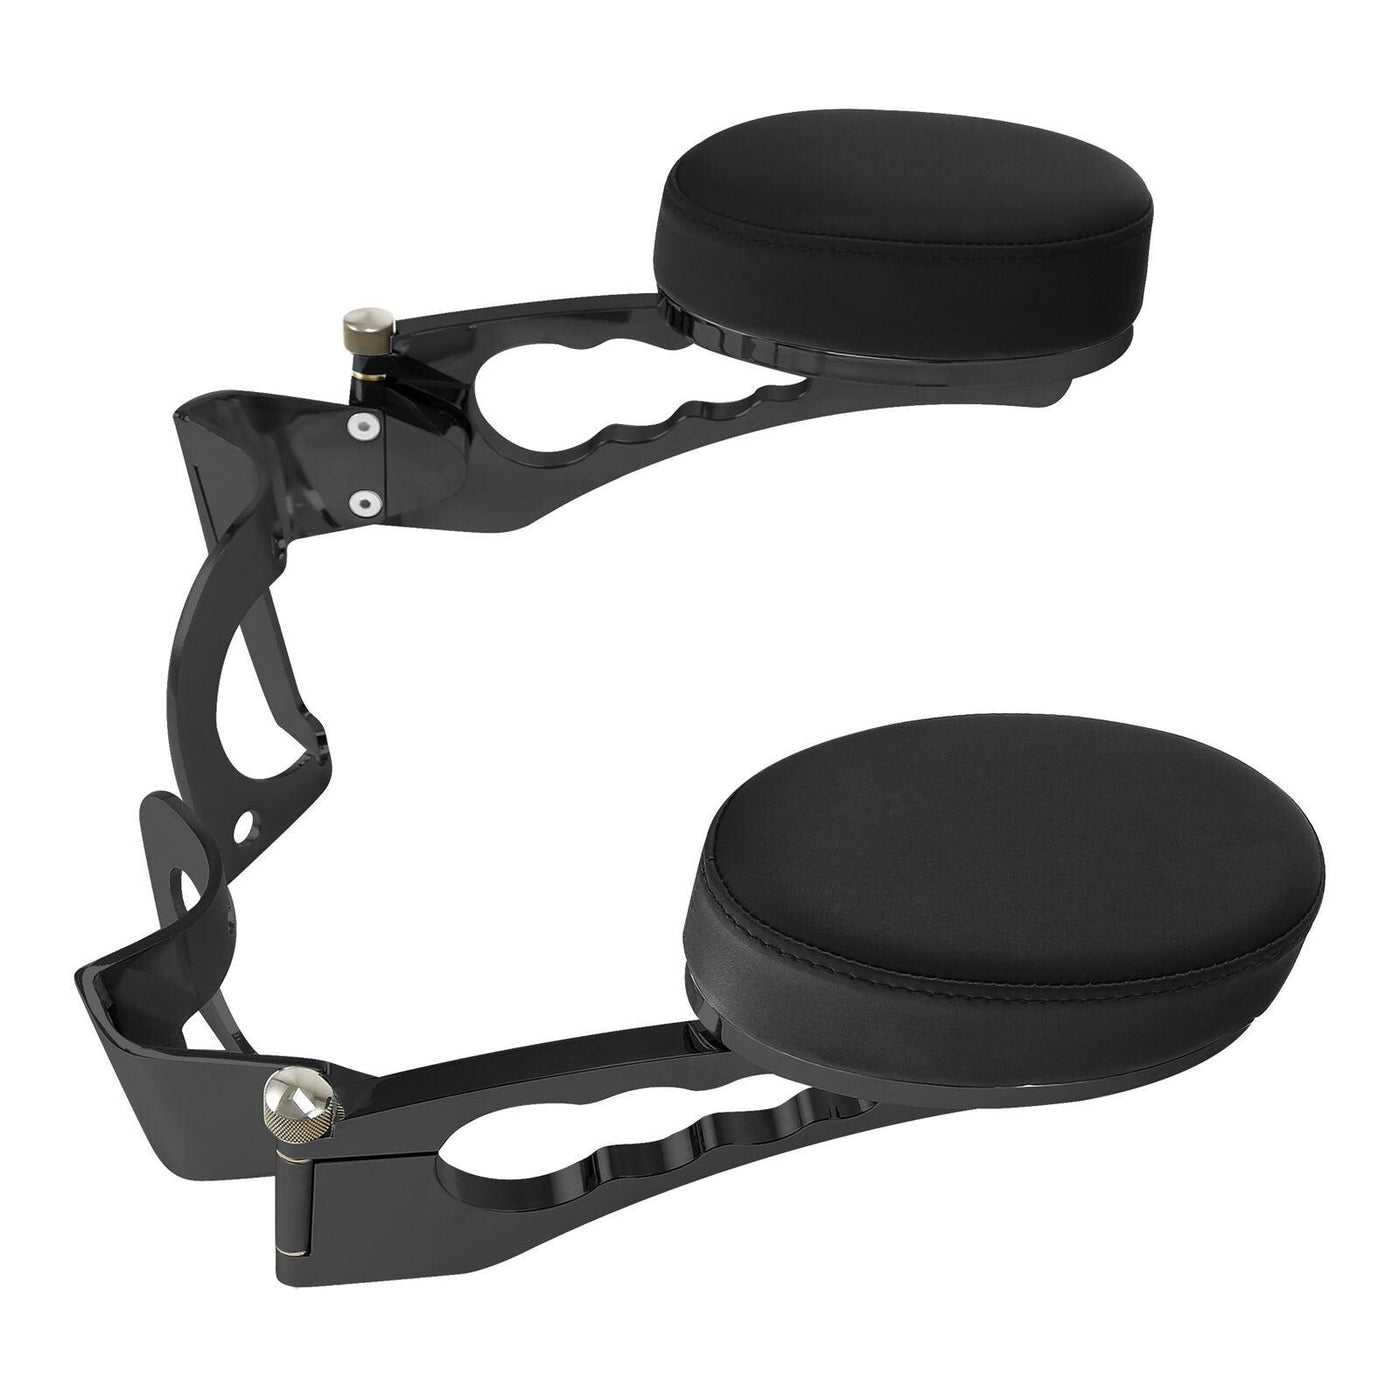 Black Adjustable Passenger Armrests Fit For Harley Road Electra Glide 2014-2022 - Moto Life Products